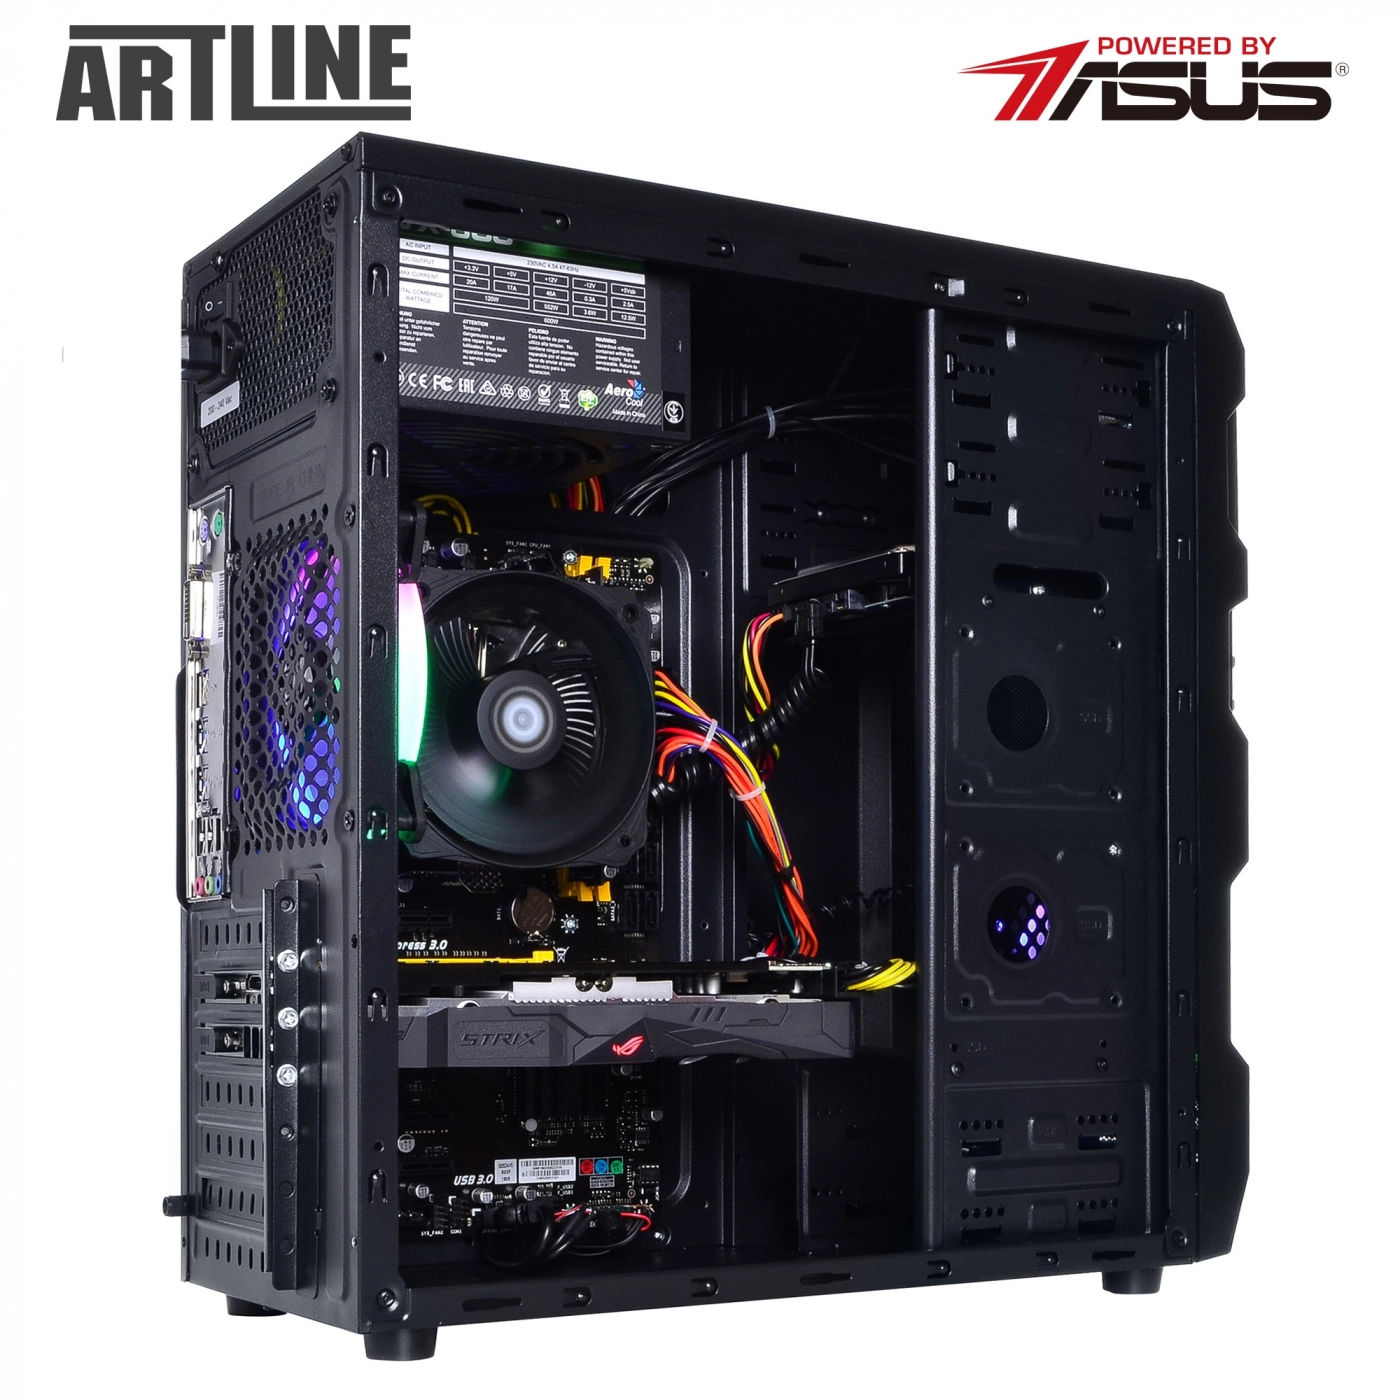 Купить Компьютер ARTLINE Gaming X39v25 - фото 9